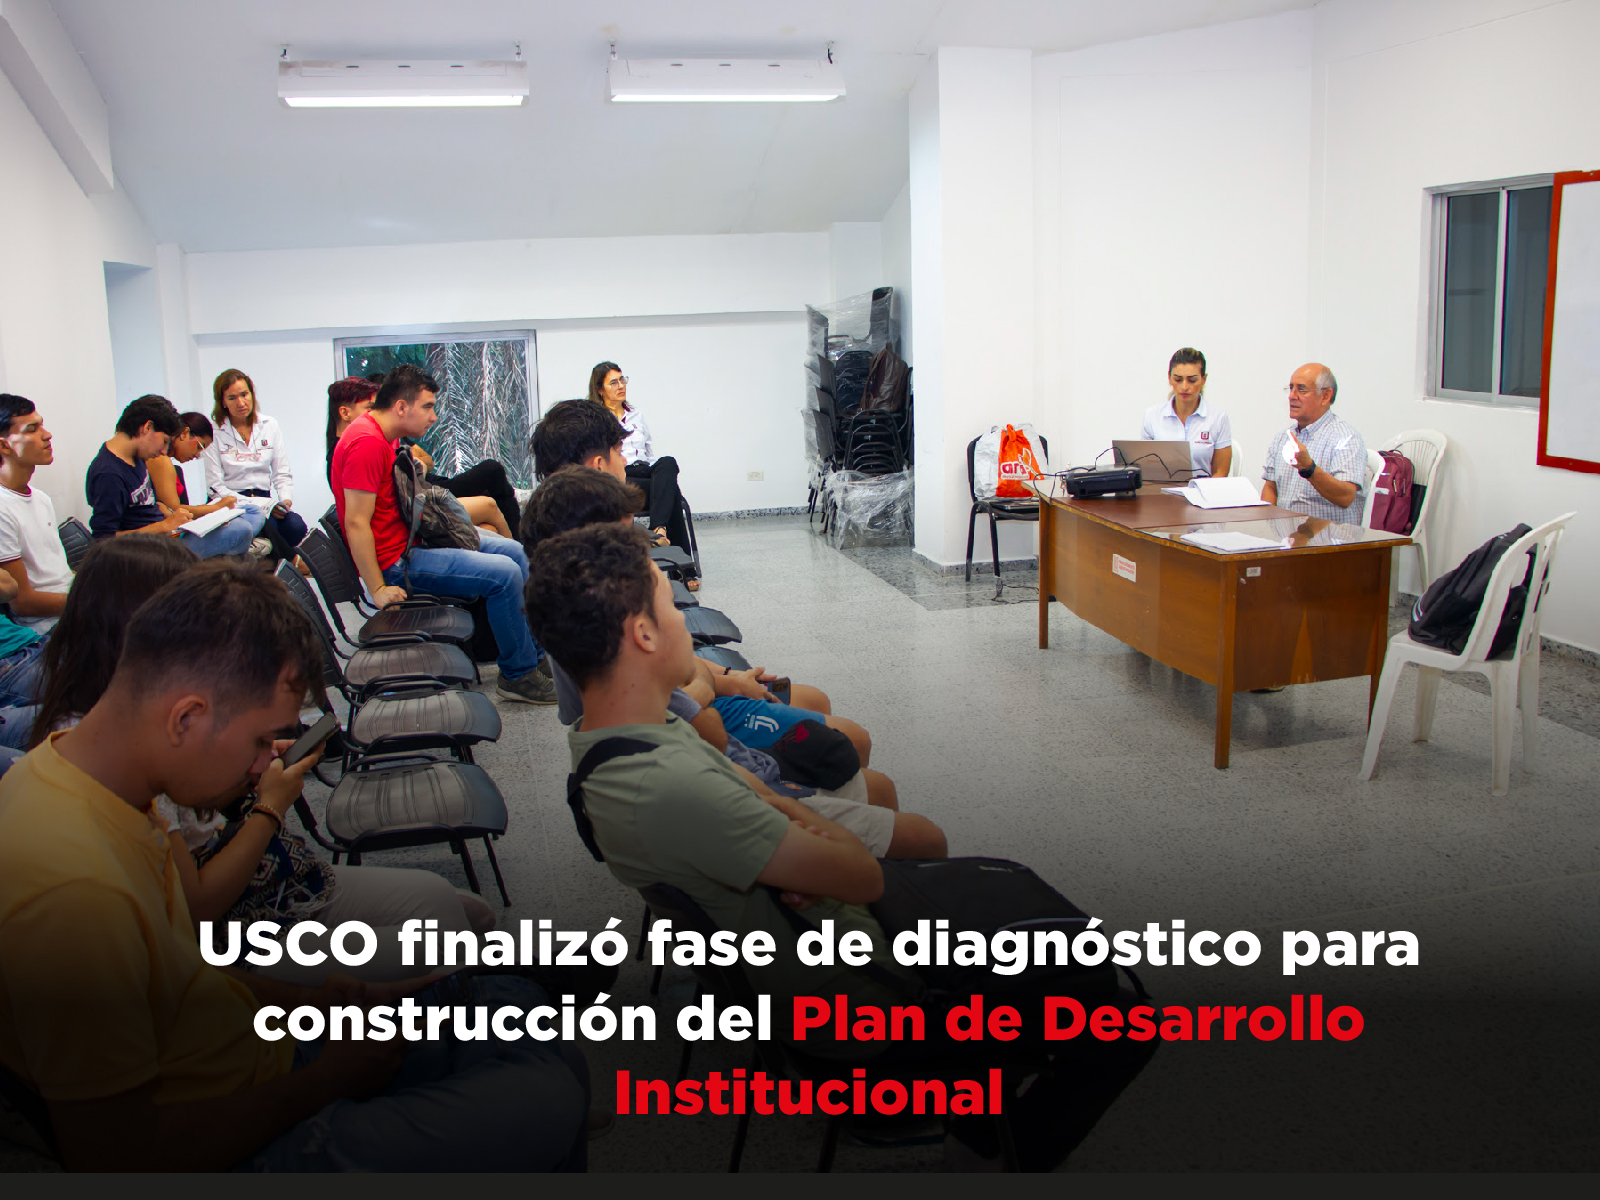 USCO finalizó fase de diagnóstico para construcción del Plan de Desarrollo Institucional